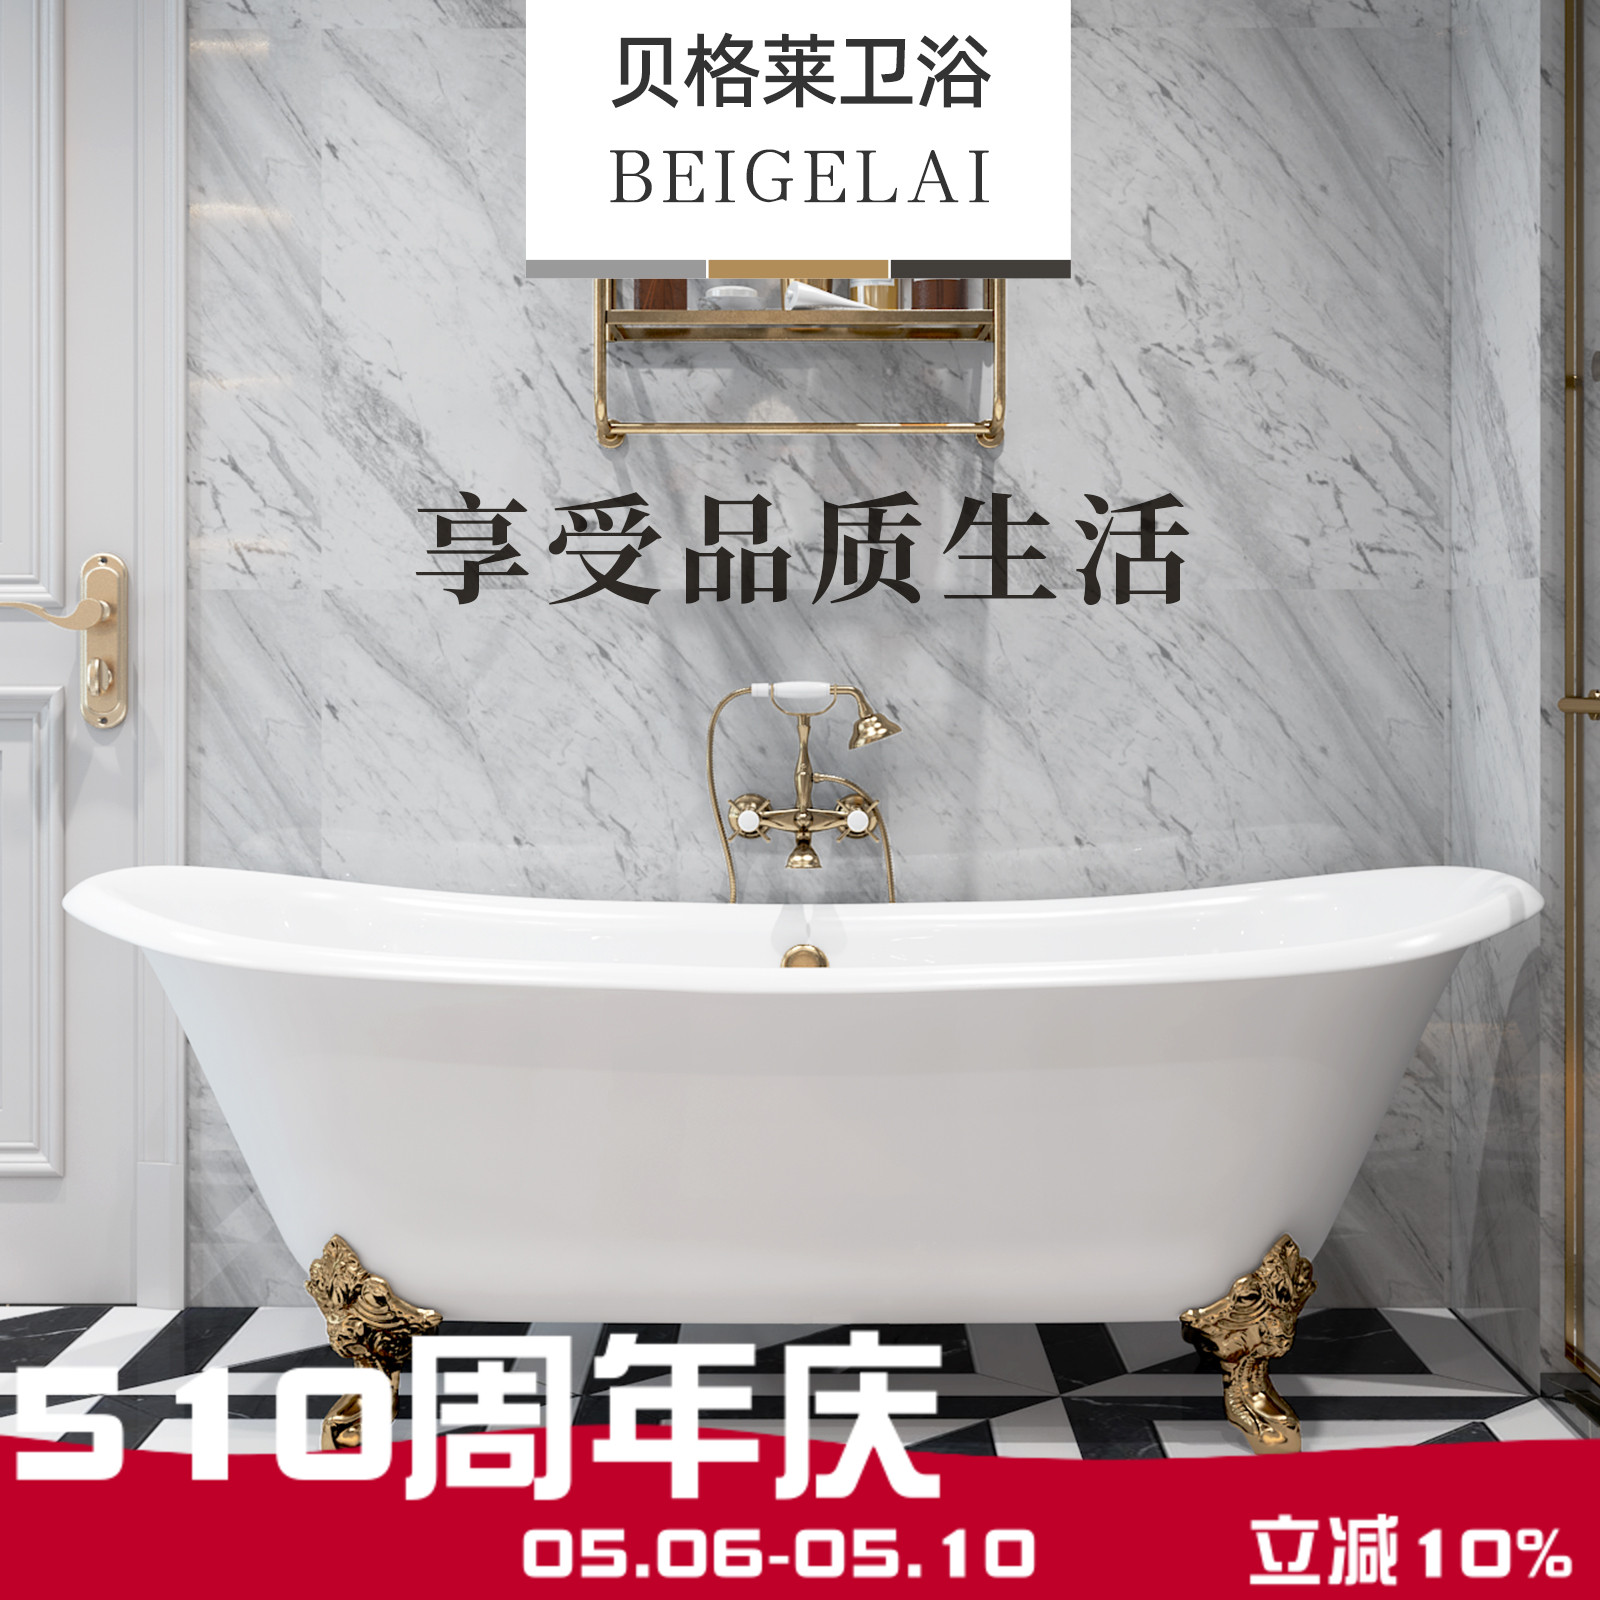 网红豪华大欧式独立式免安装铸铁陶瓷深泡双人浴缸家用搪瓷贝格莱